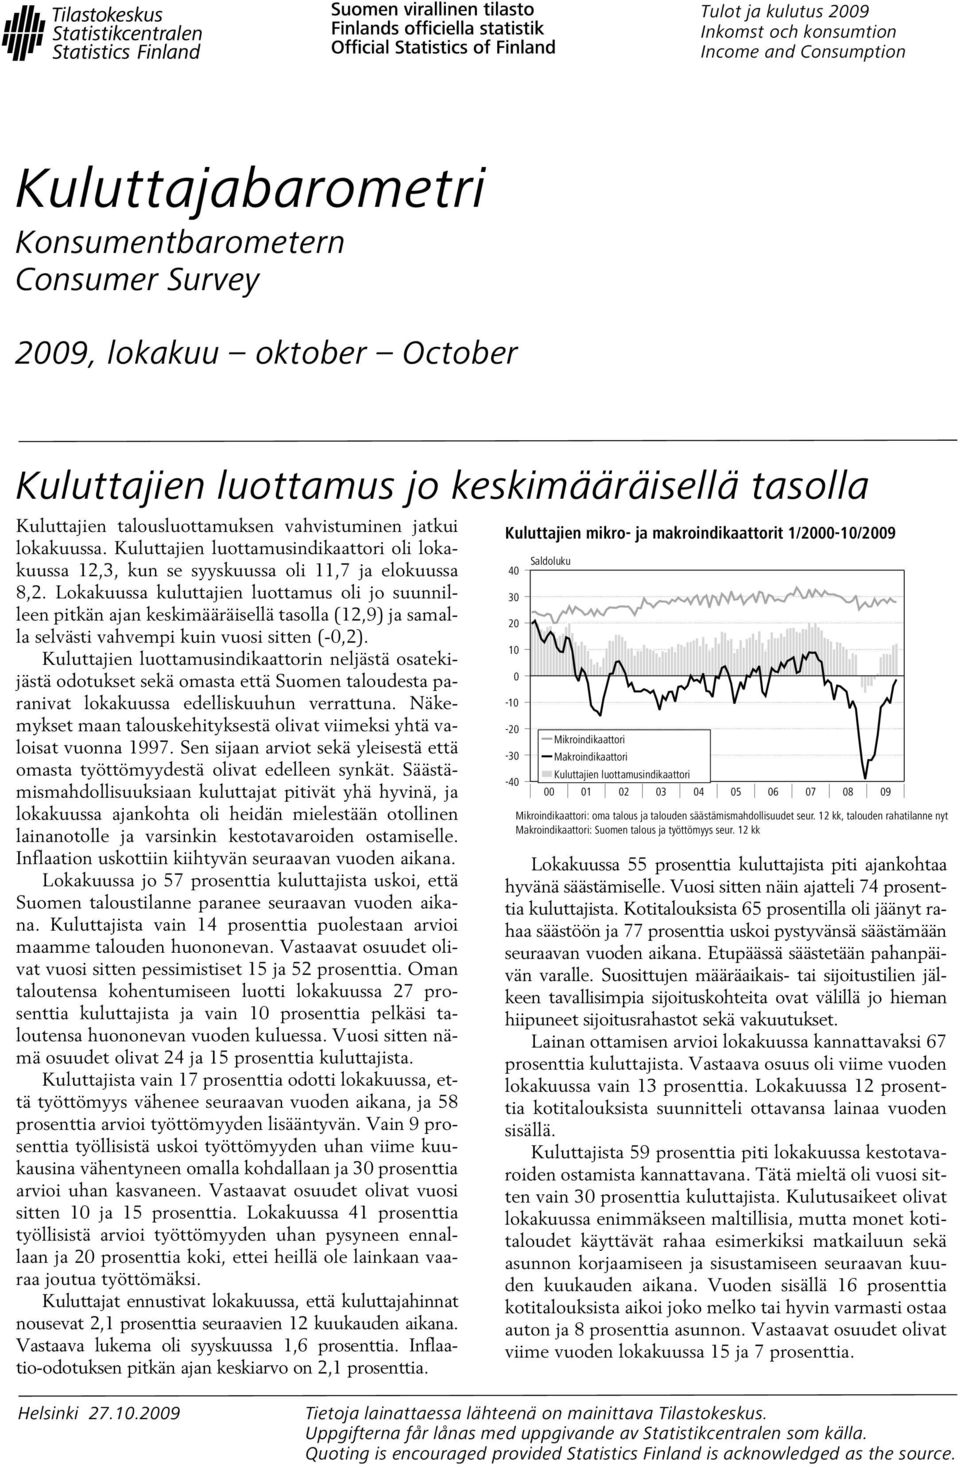 Lokakuussa kuluttajien luottamus oli jo suunnilleen pitkän ajan keskimääräisellä tasolla (12,9) ja samalla selvästi vahvempi kuin vuosi sitten (-0,2).